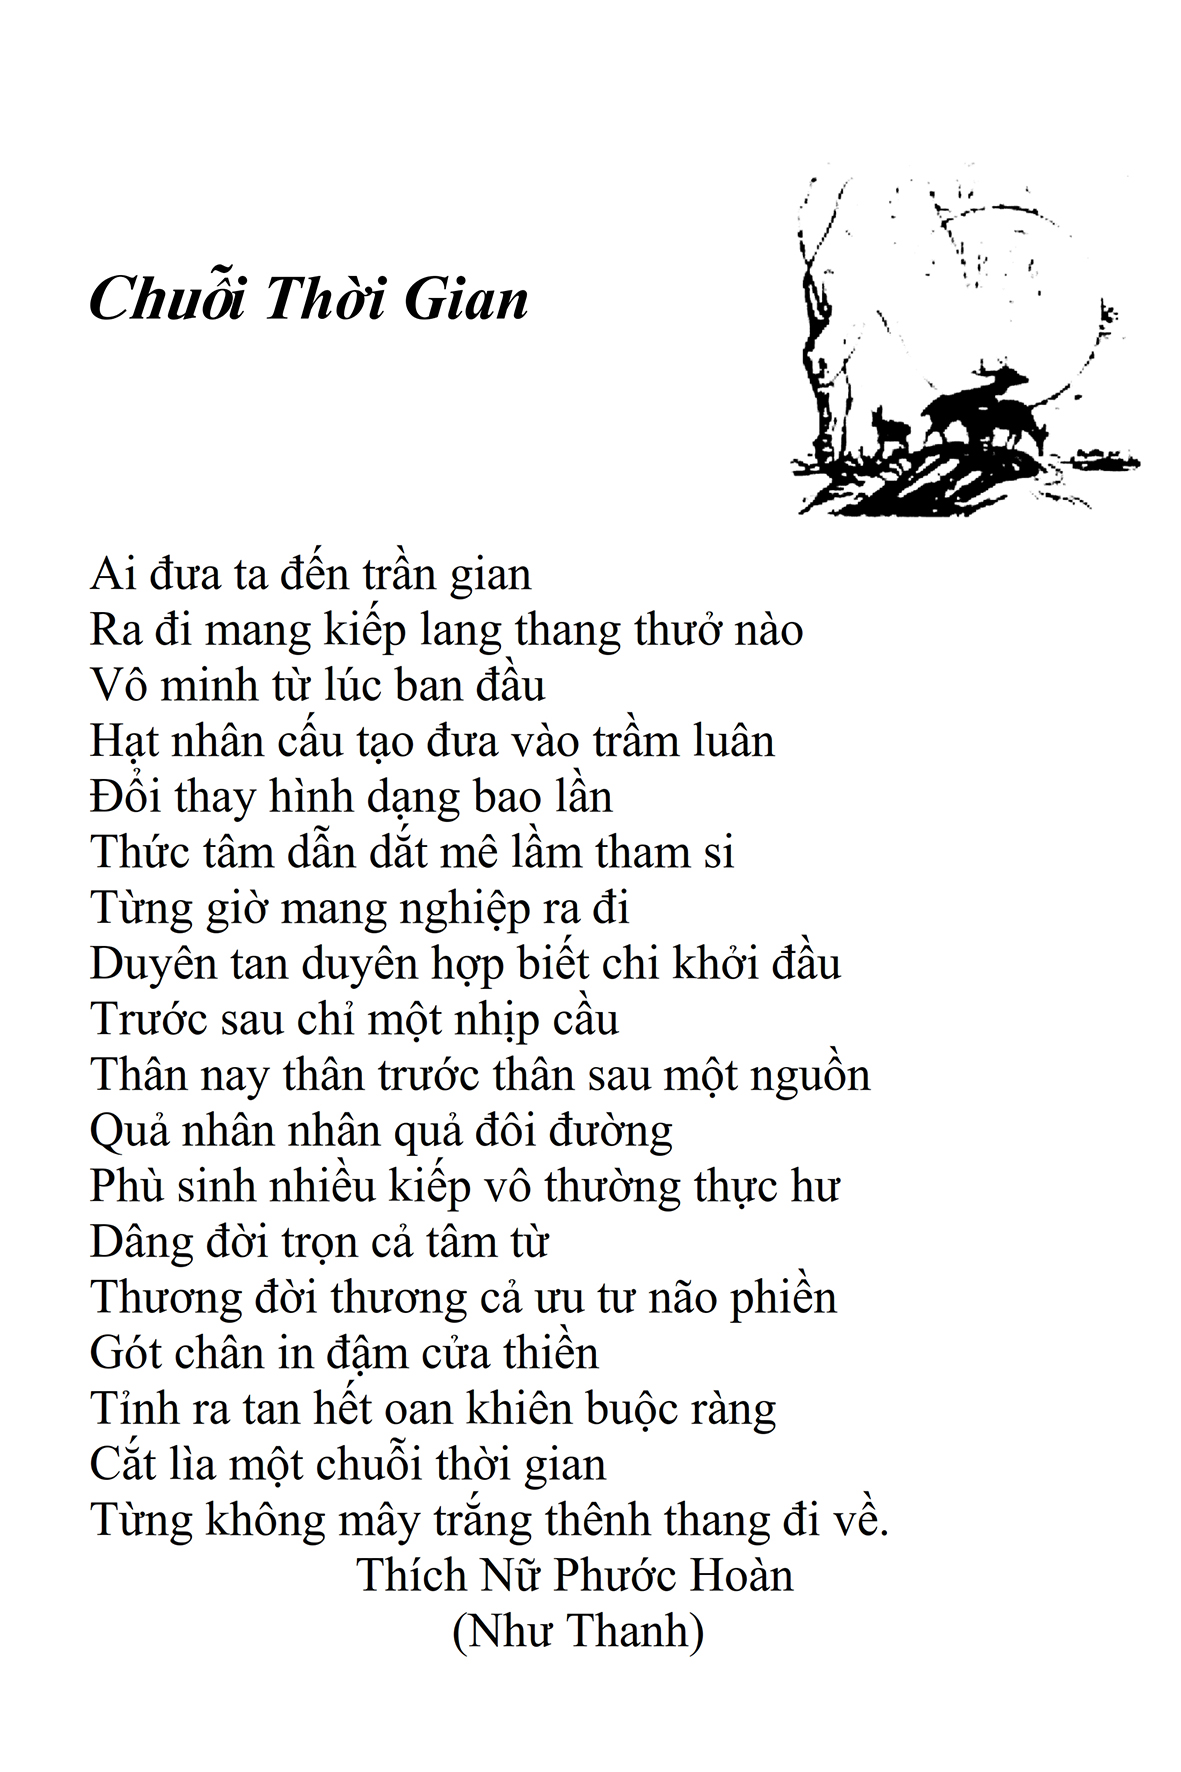 Chuoi Thoi Gian